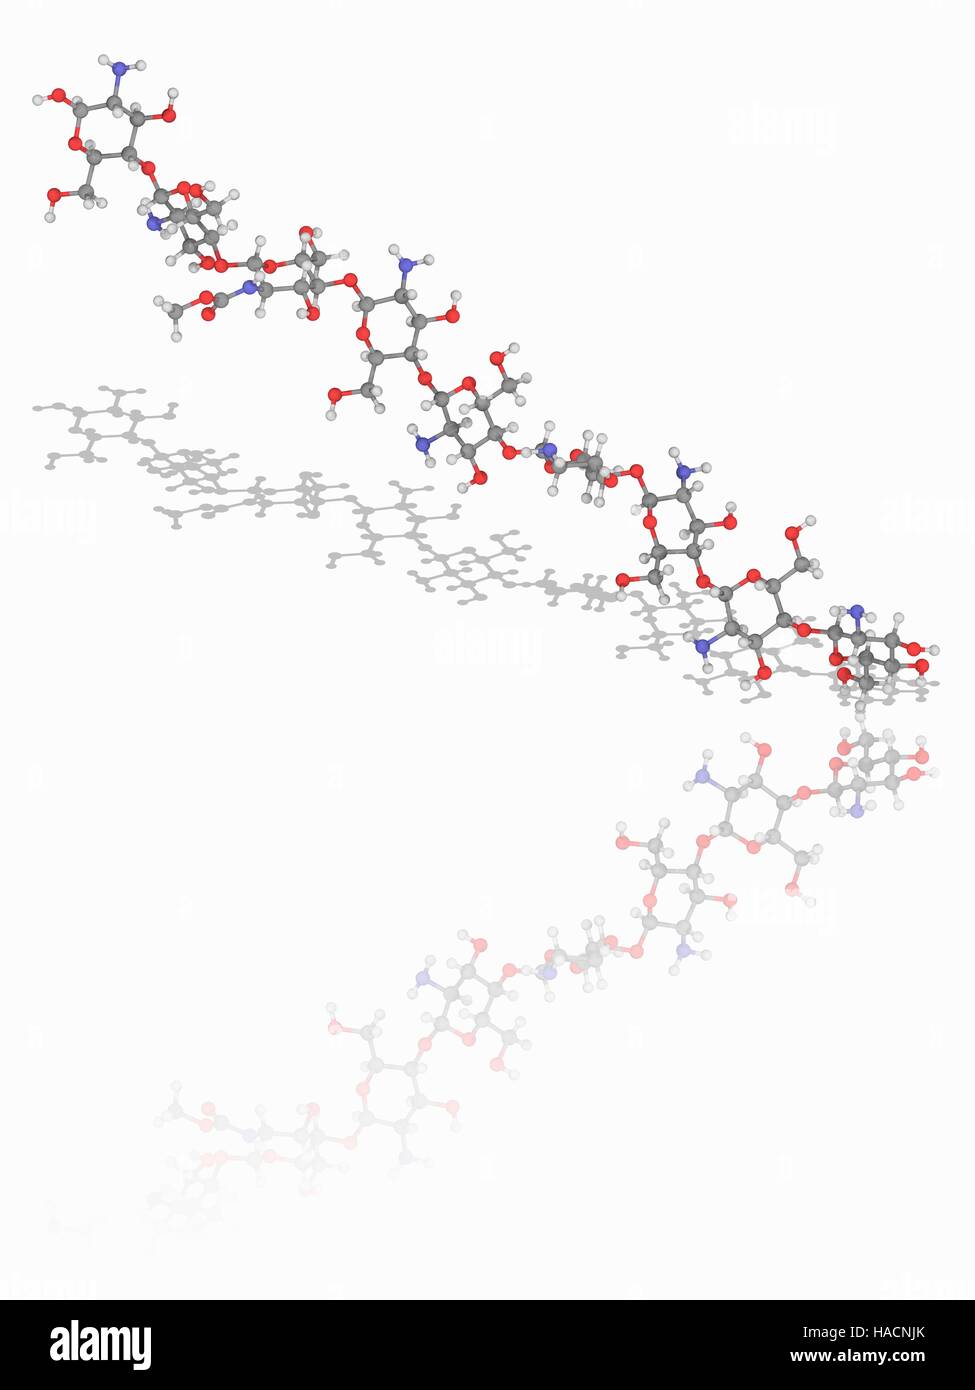 Chitosan-Polymerkette. Molekulares Modell des lineares Polysaccharid Chitosan, auch bekannt als Poliglusam. Diese Chemikalie wird kommerziell durch Deacetylation von Chitin produziert. Die Struktur ist Kette von D-Glucosamin (C6. H13. N.O5) N-Acetyl-D-Glucosamin (C8. H15. N.O6). Die Kette hier ist vor allem Einheiten der Stockfoto